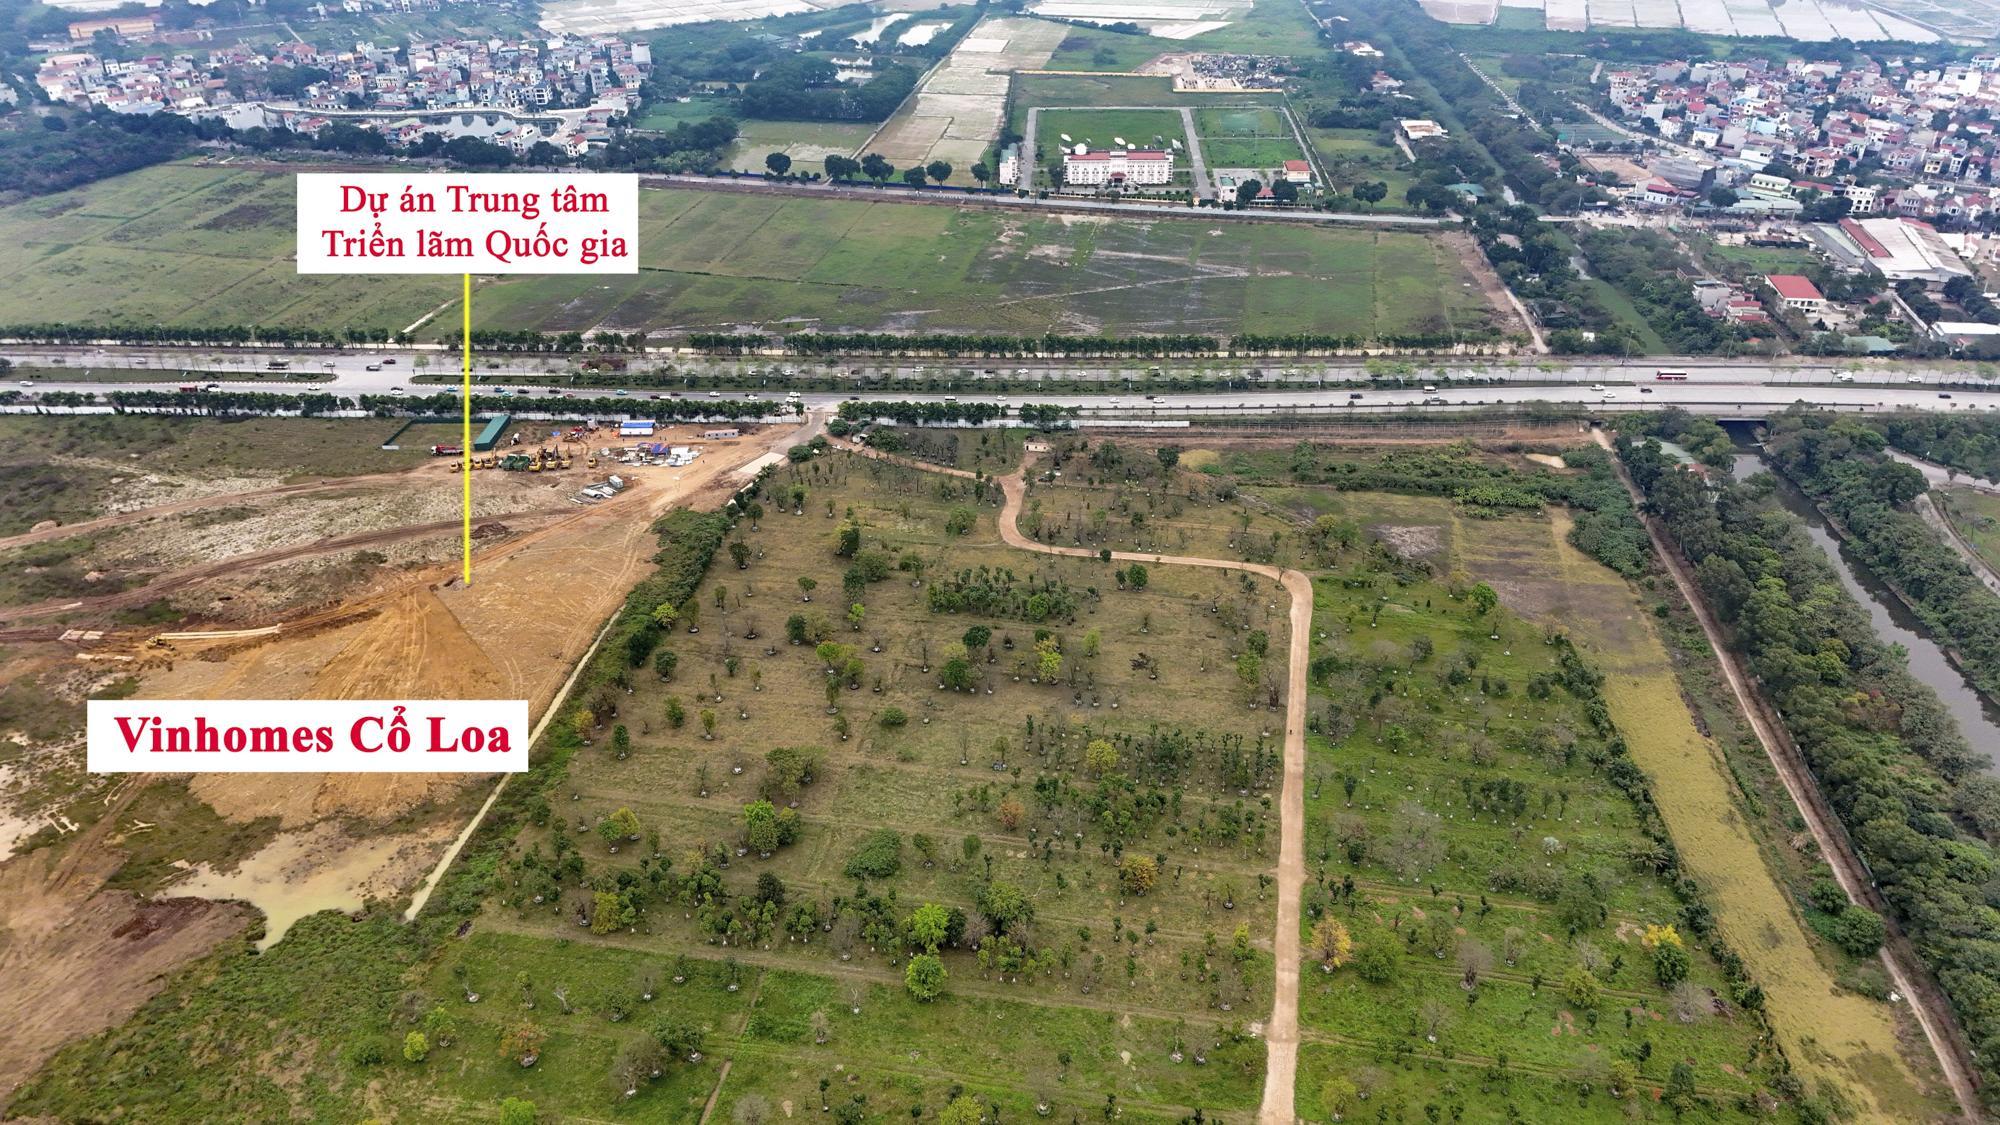 Khu vực sắp được xây cầu 20.000 tỷ, vượt qua 2 con sông lớn, đi qua đại dự án của Vinhomes ở Hà Nội- Ảnh 8.